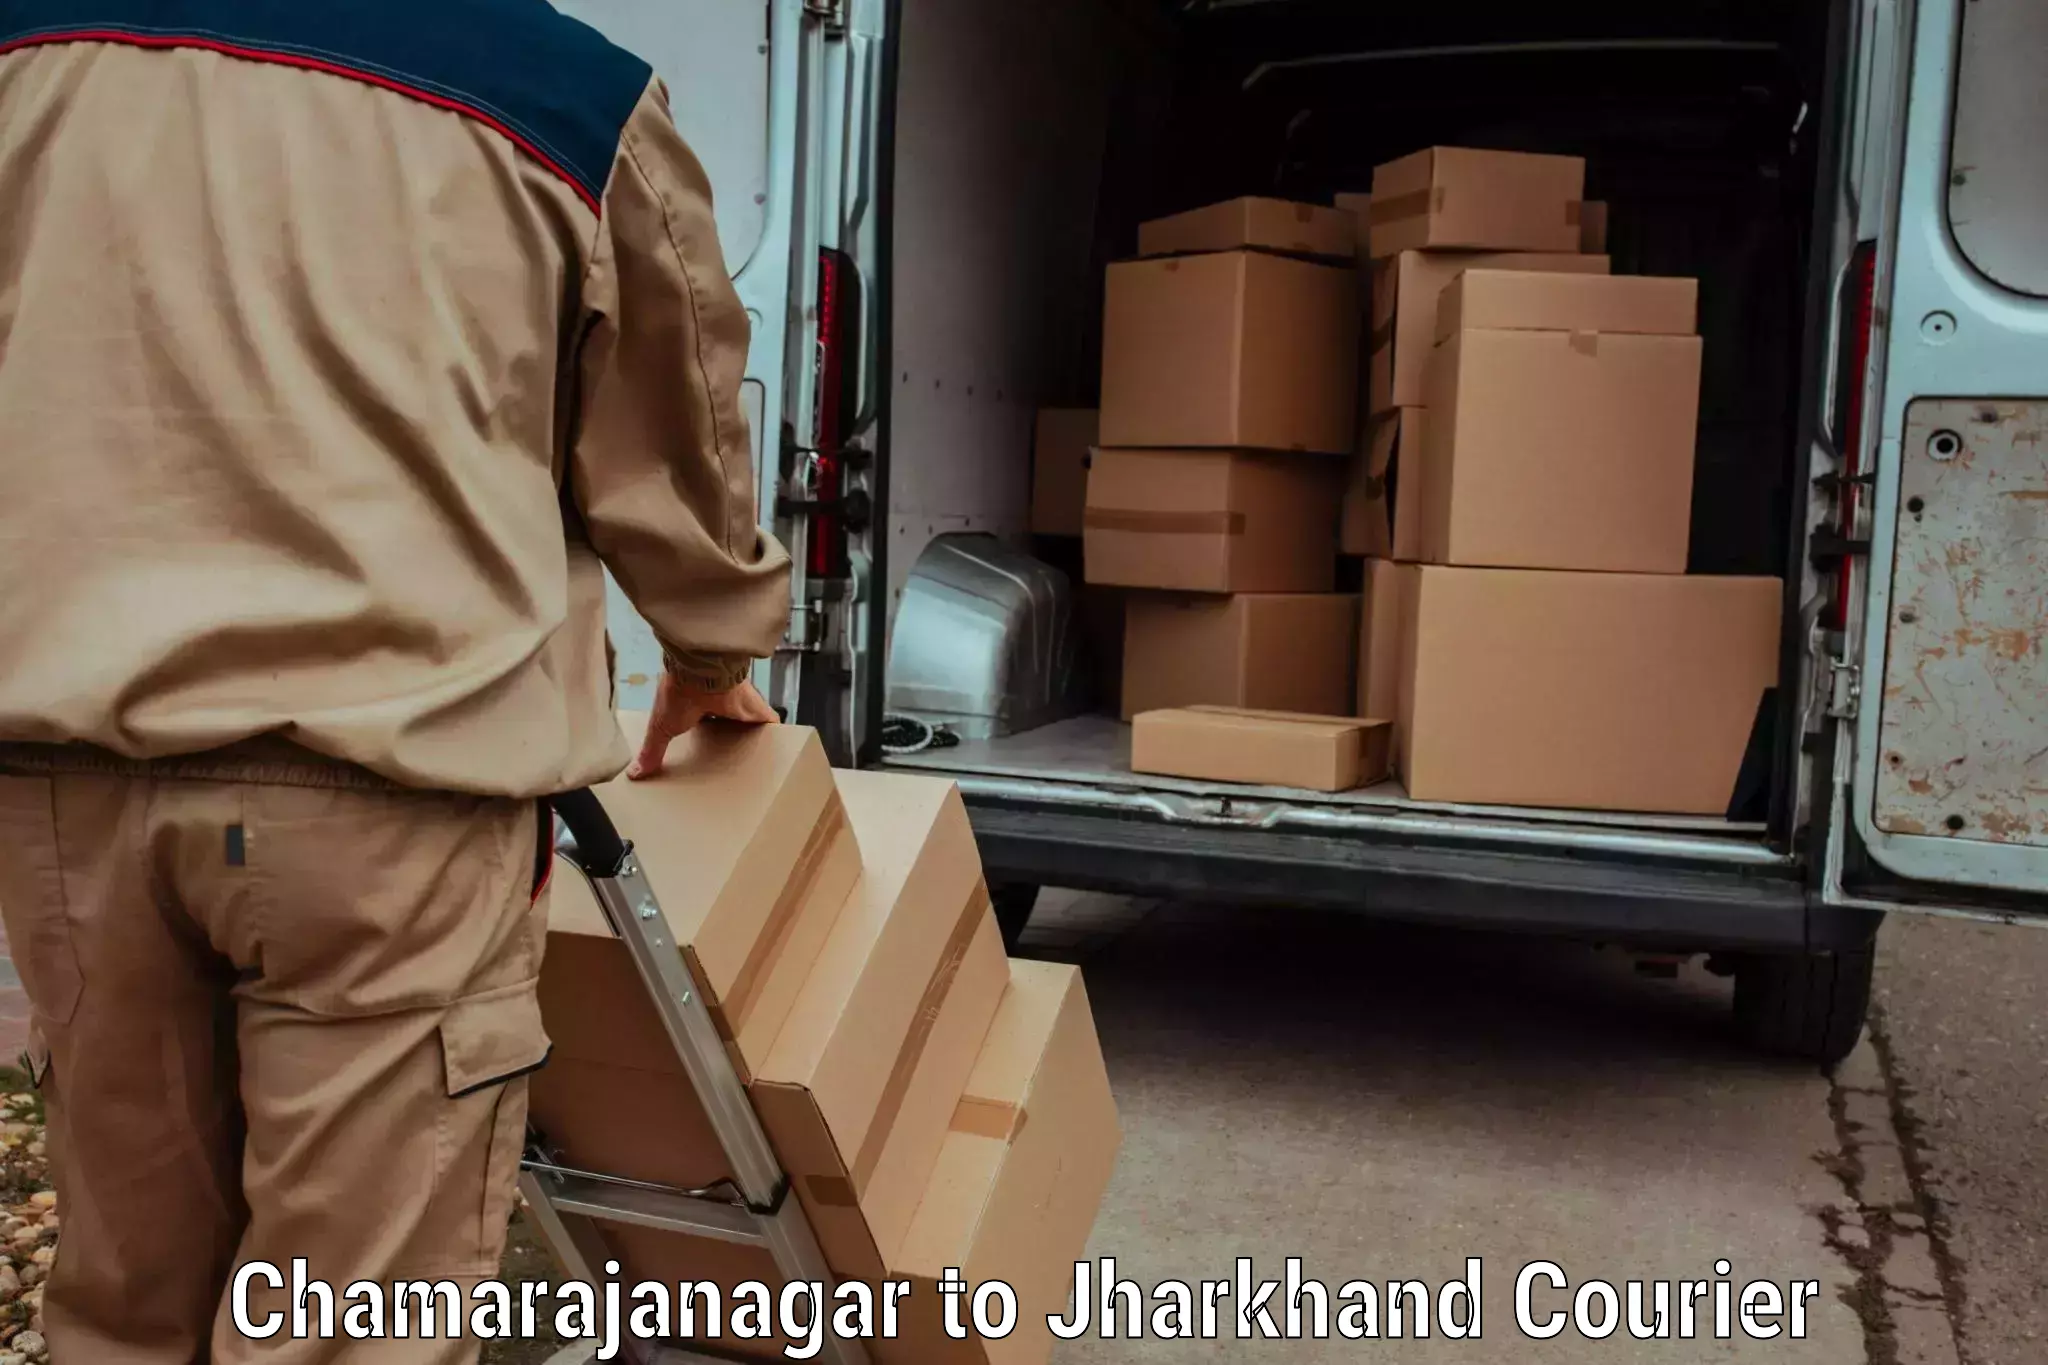 Customer-centric shipping Chamarajanagar to Ghatshila